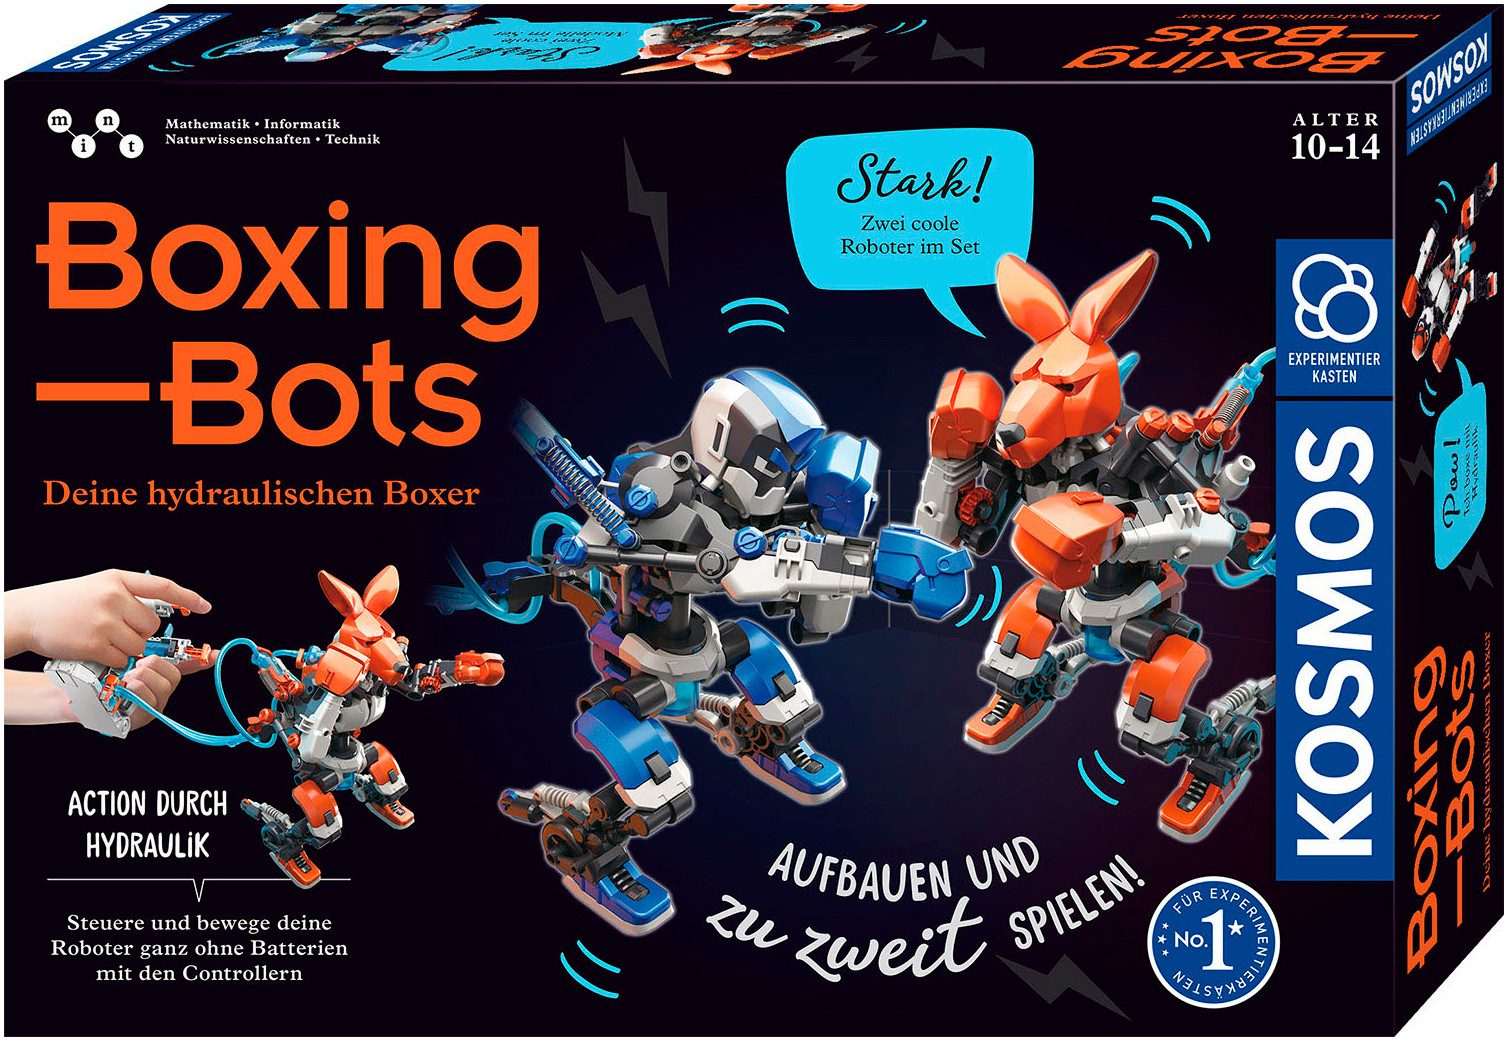 Kosmos Experimentierkasten Boxing Bots - Deine hydraulischen Boxer